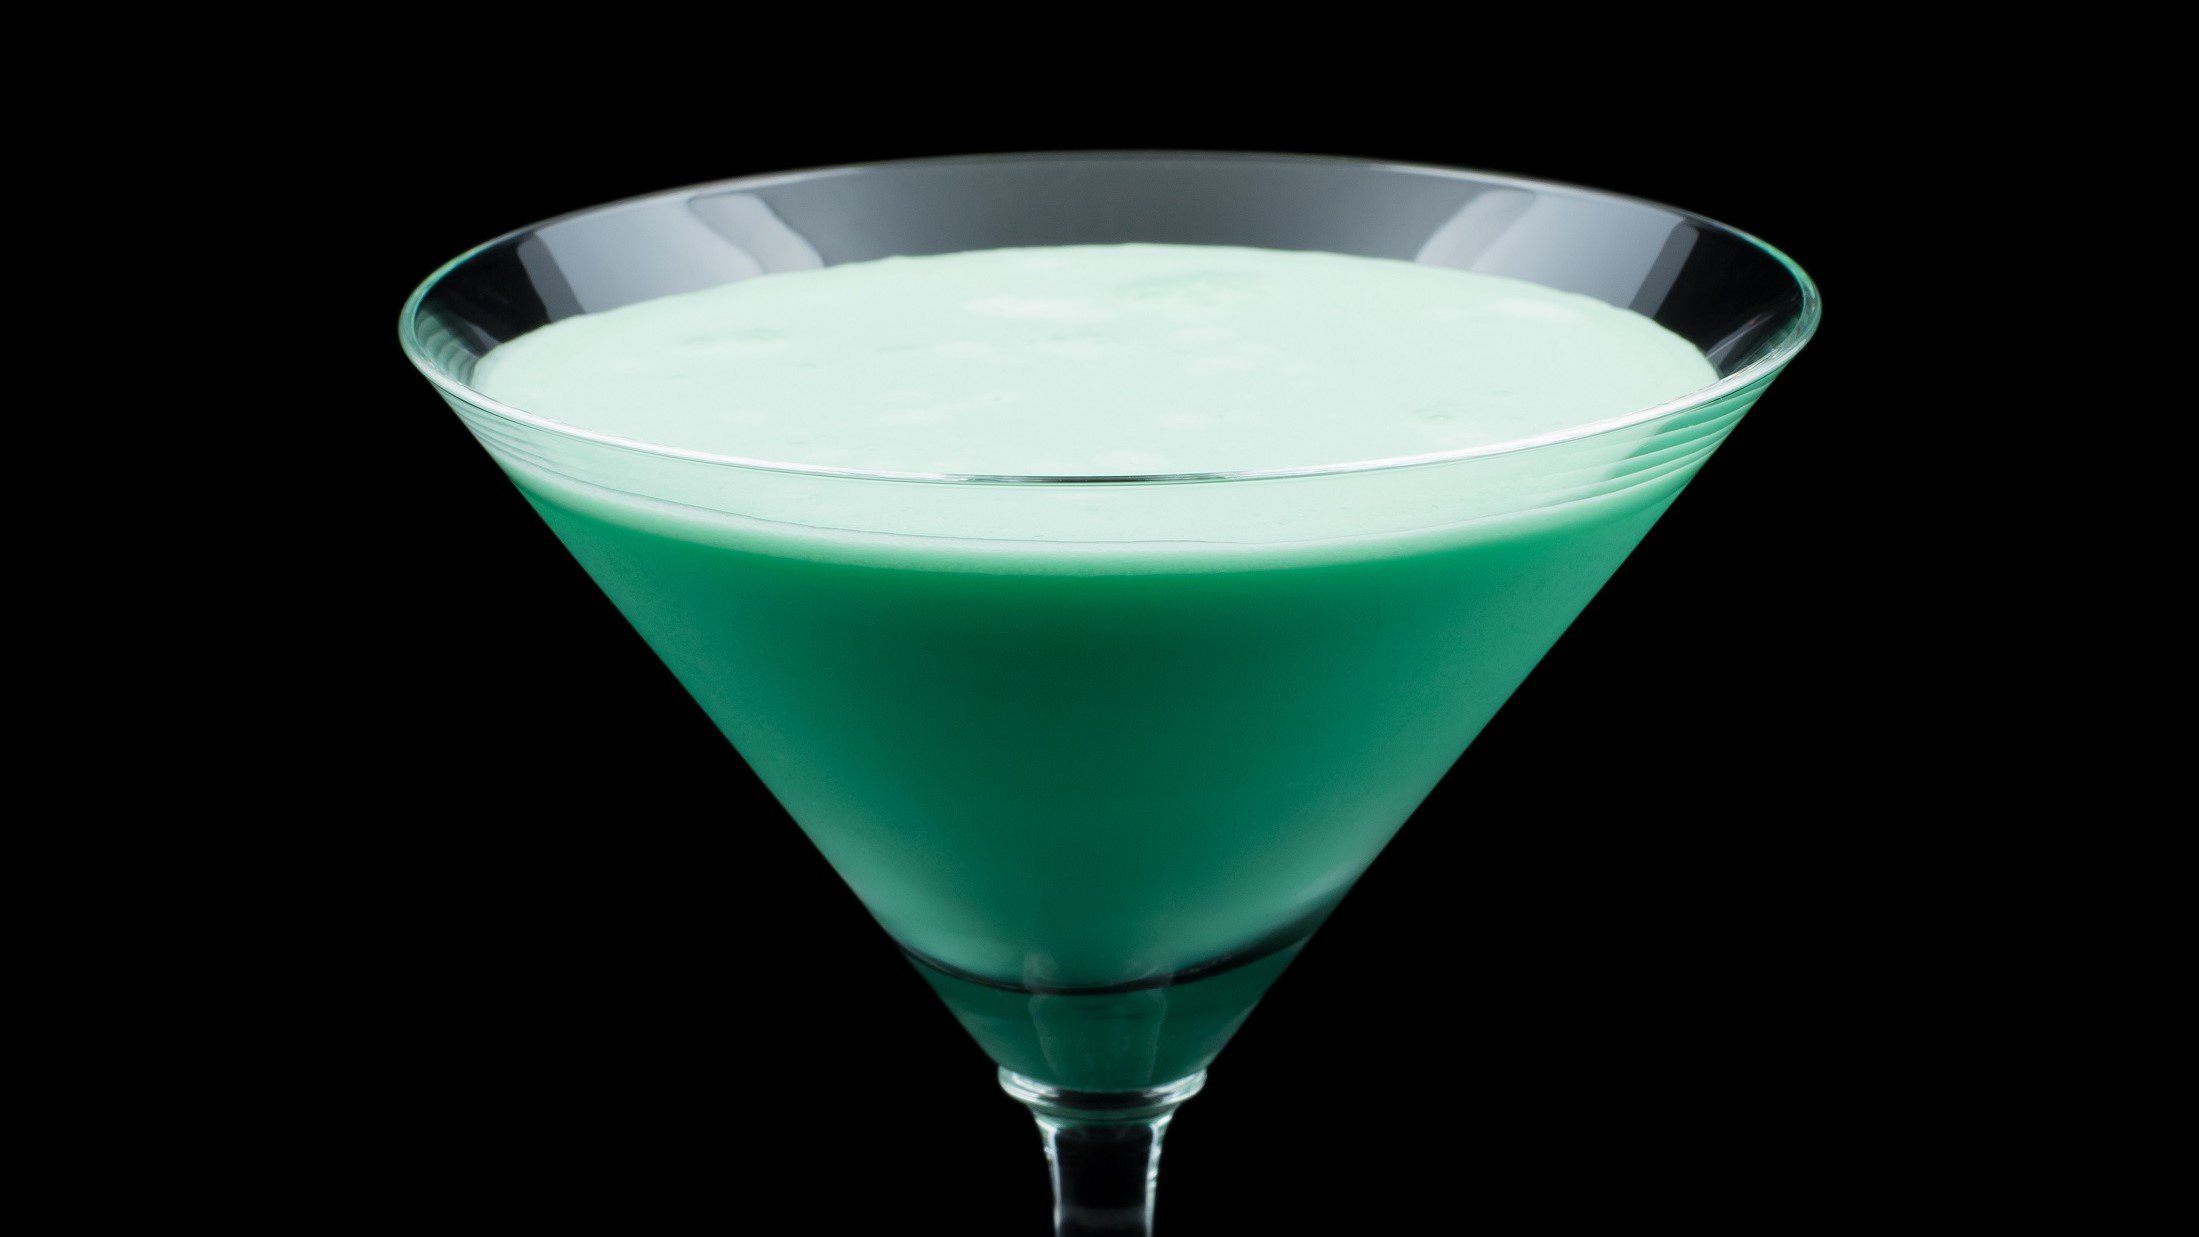 Grasshopper in einem Martini-Glas vor dunklem Hintergrund